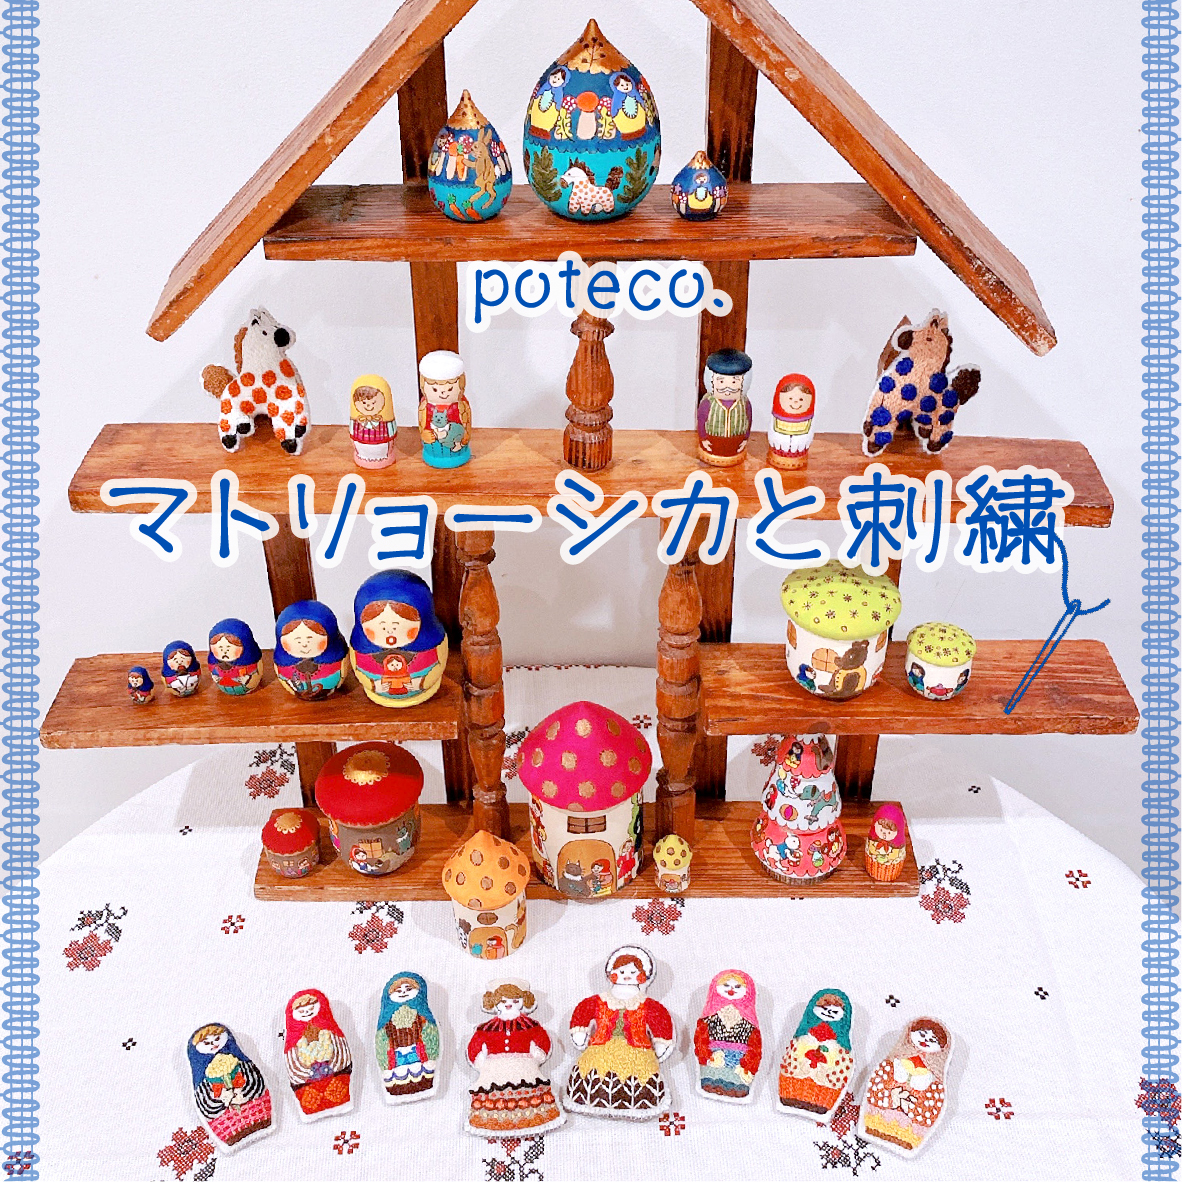 【イベント】poteco.「マトリョーシカと刺繍」